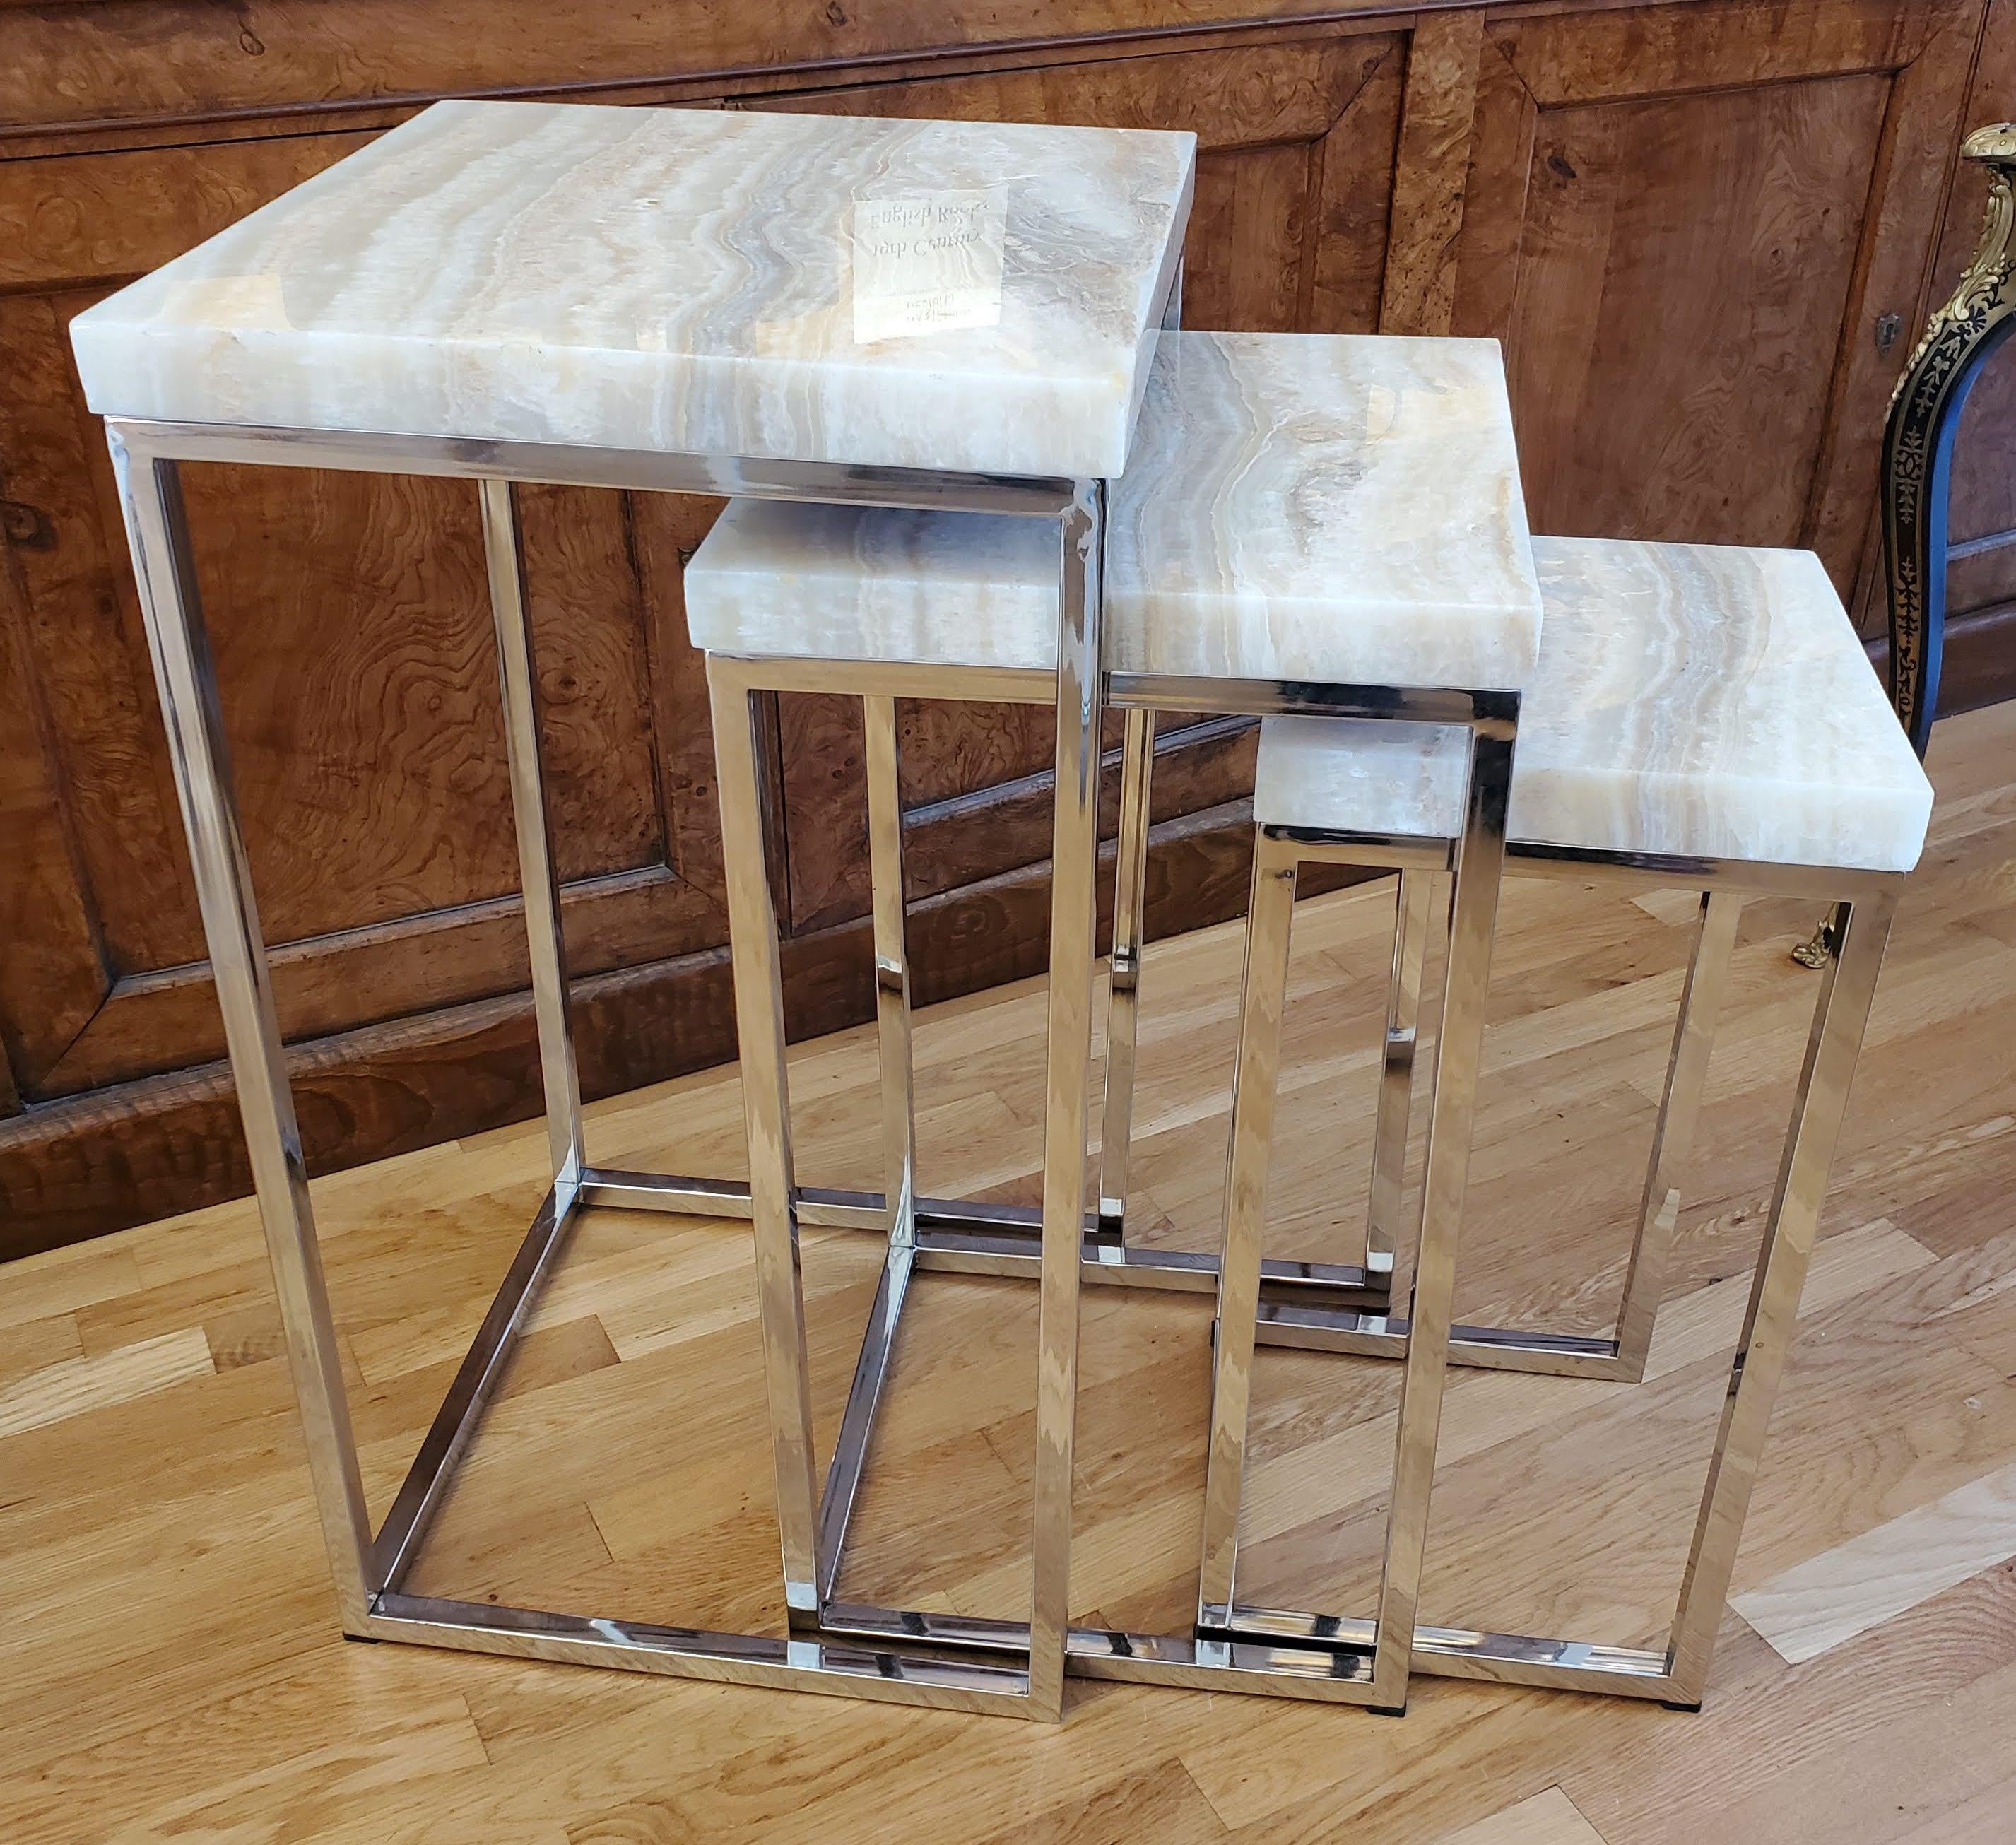 Diese Mid-Century Modern Nisttische sind eine wunderbare Ergänzung für Ihr Zuhause. Drei Tische in abgestuften Größen mit verchromten Beinen und Onyx-Platten, die viele Komplimente erhalten werden. Schöne Höhe und Stabilität für jeden Tisch.